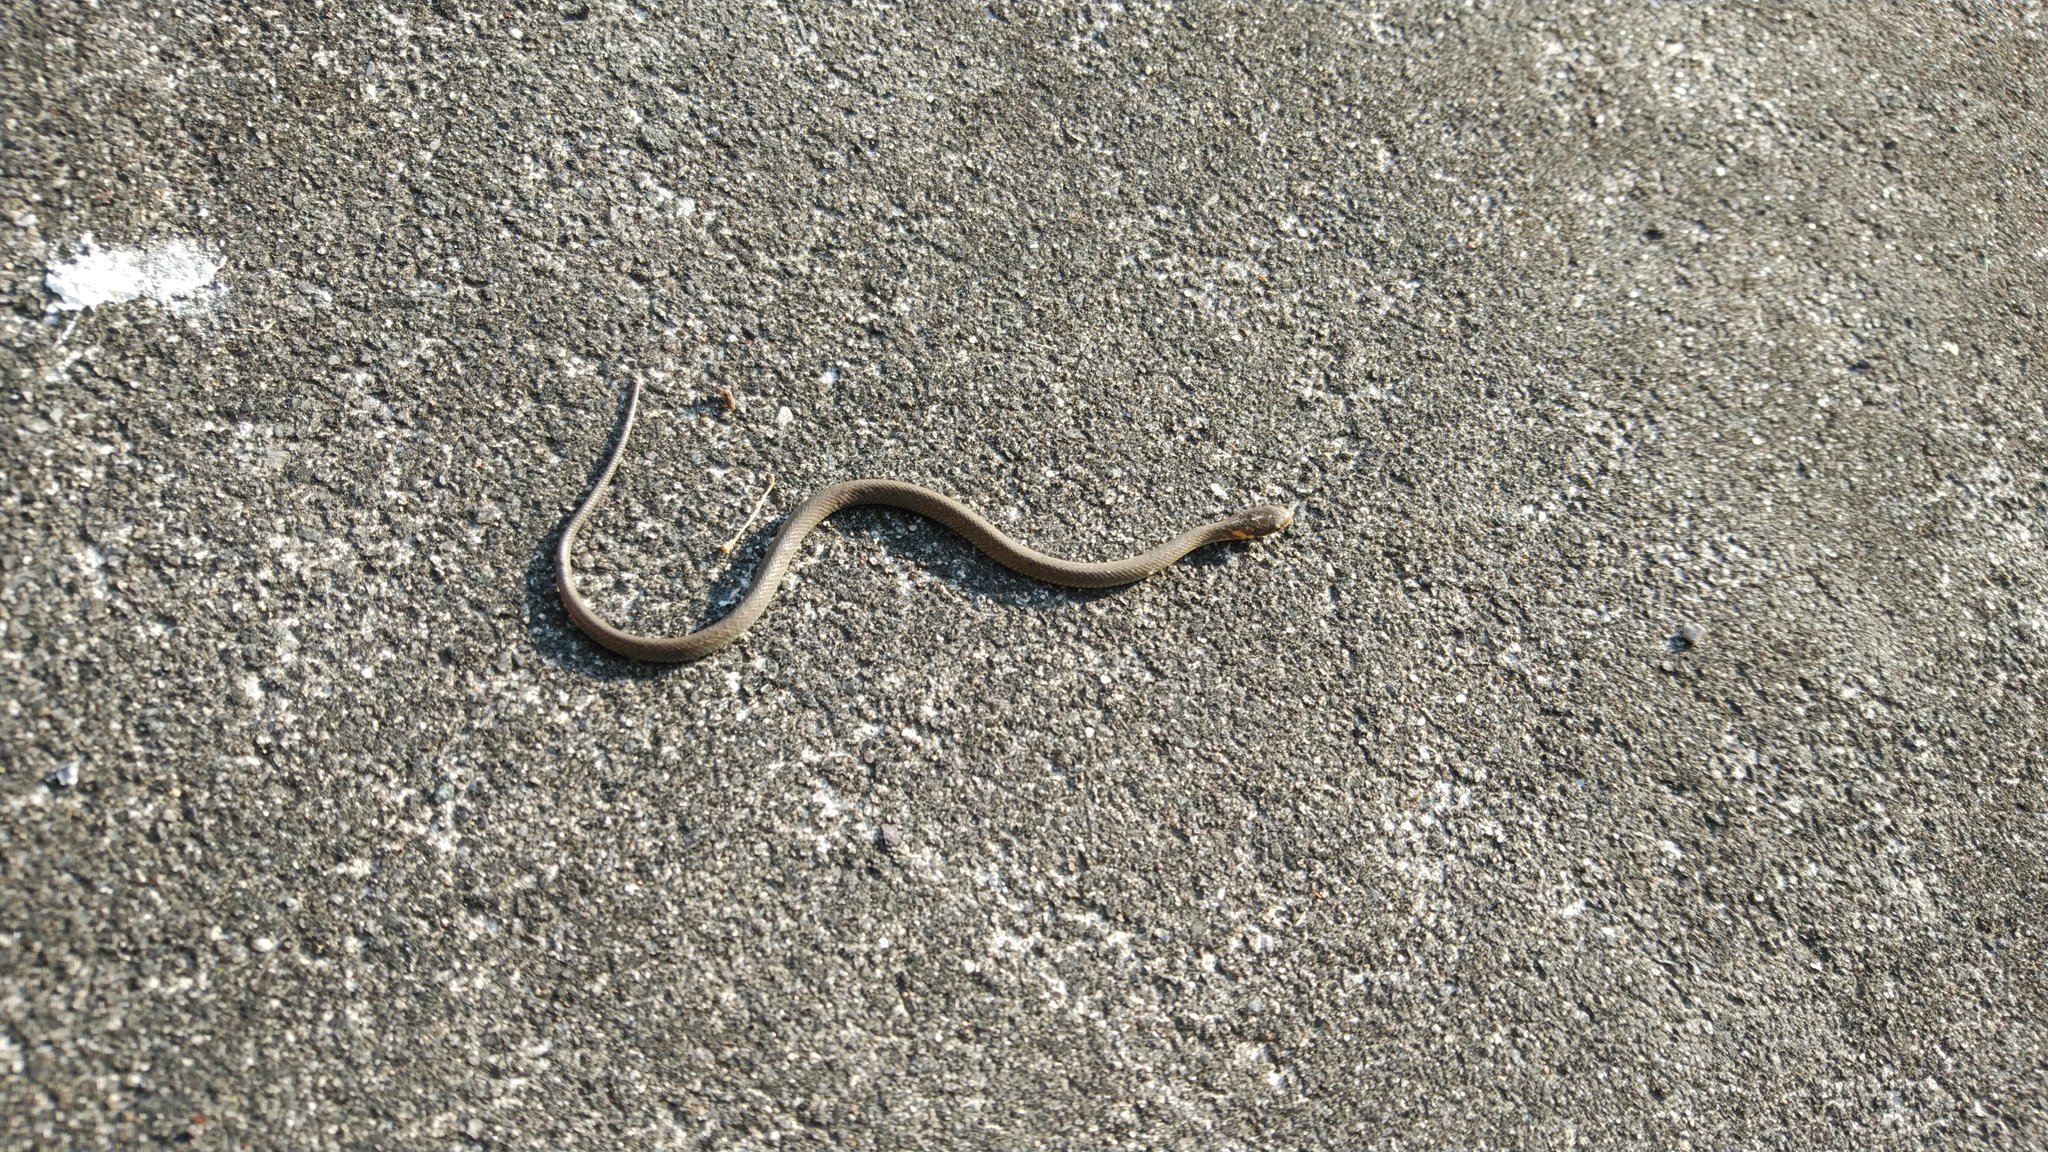 ウル虎マリン No Twitter 今朝の生き物写真 蛇の赤ちゃん 体長約10センチ こんな暑い日に ニョロニョロ出て来たら 干からびて干し蛇になってしまうで 蛇の赤ちゃん どこかに親蛇が居るのか T Co Jf537ceh33 Twitter